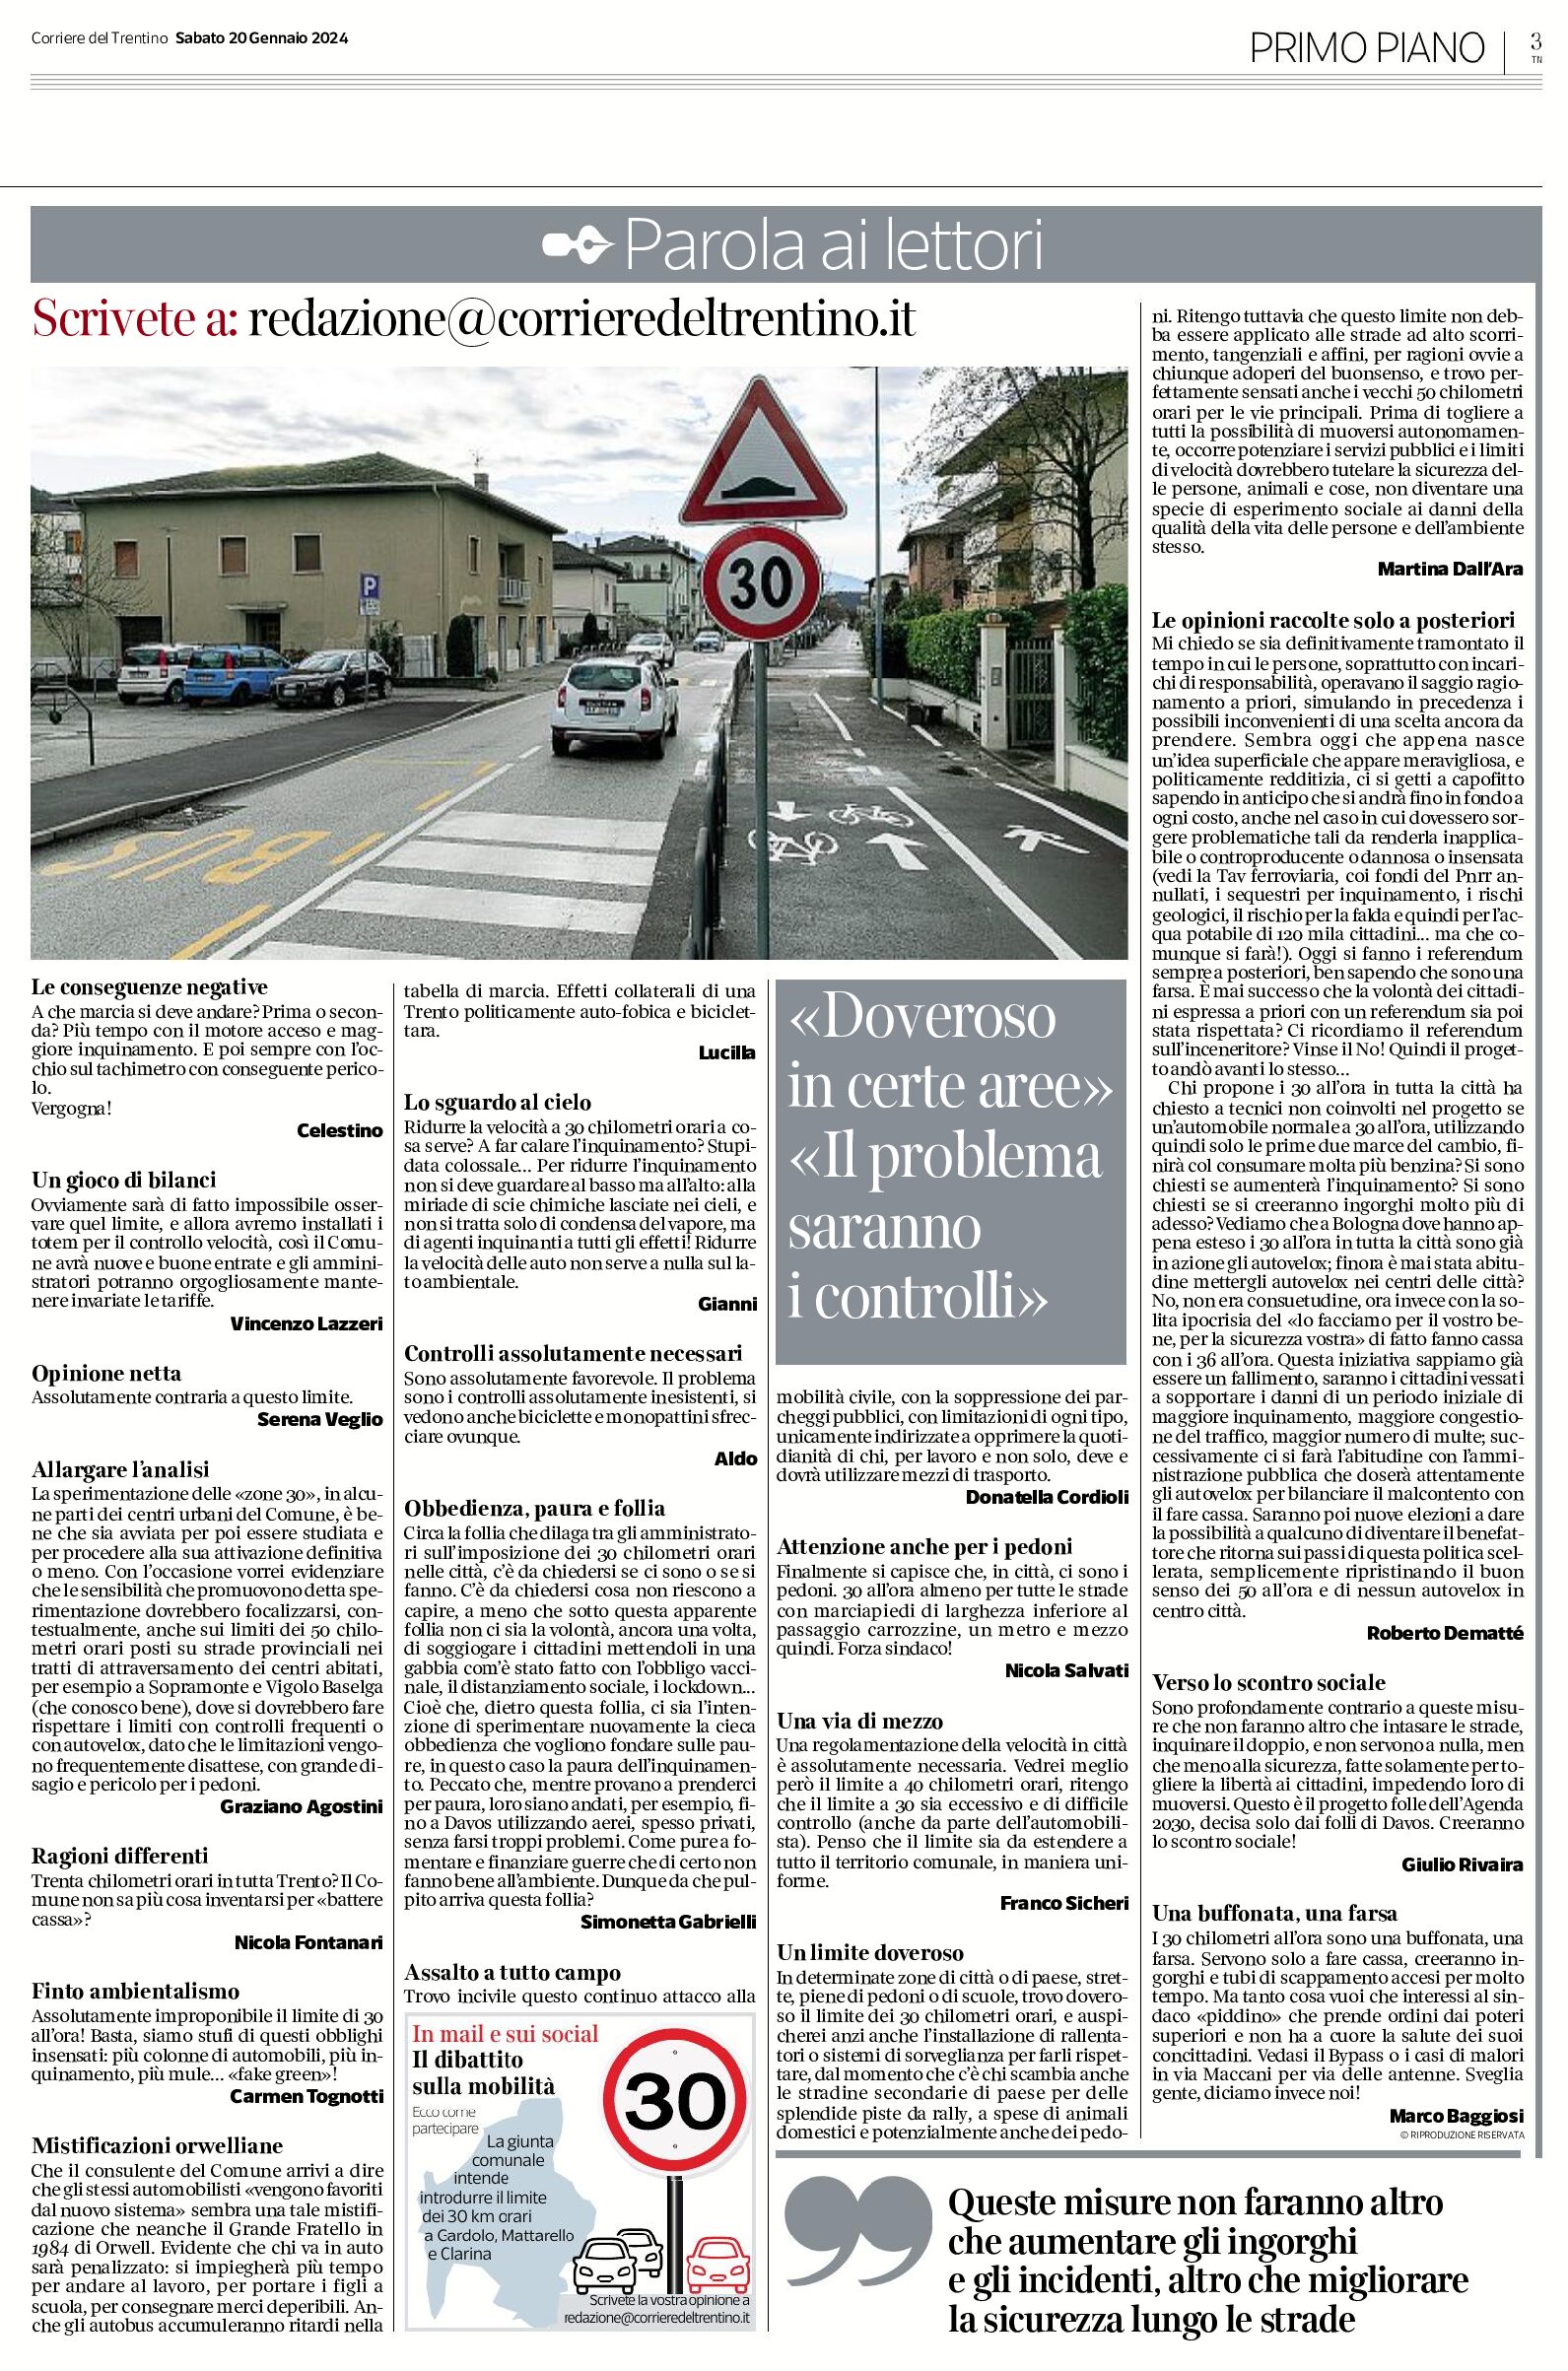 Zone 30, parola ai lettori: scrivete a “redazione@corrieredeltrentino.it”